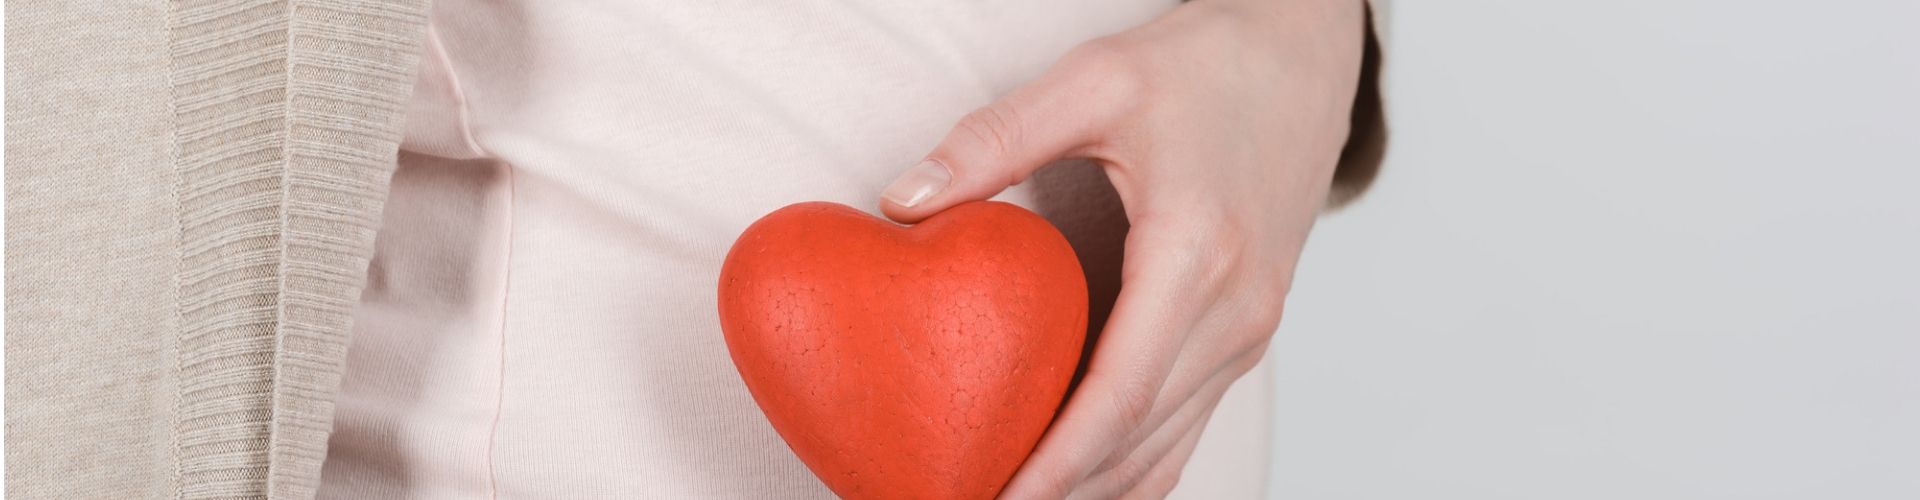 heart disease in pregnant women